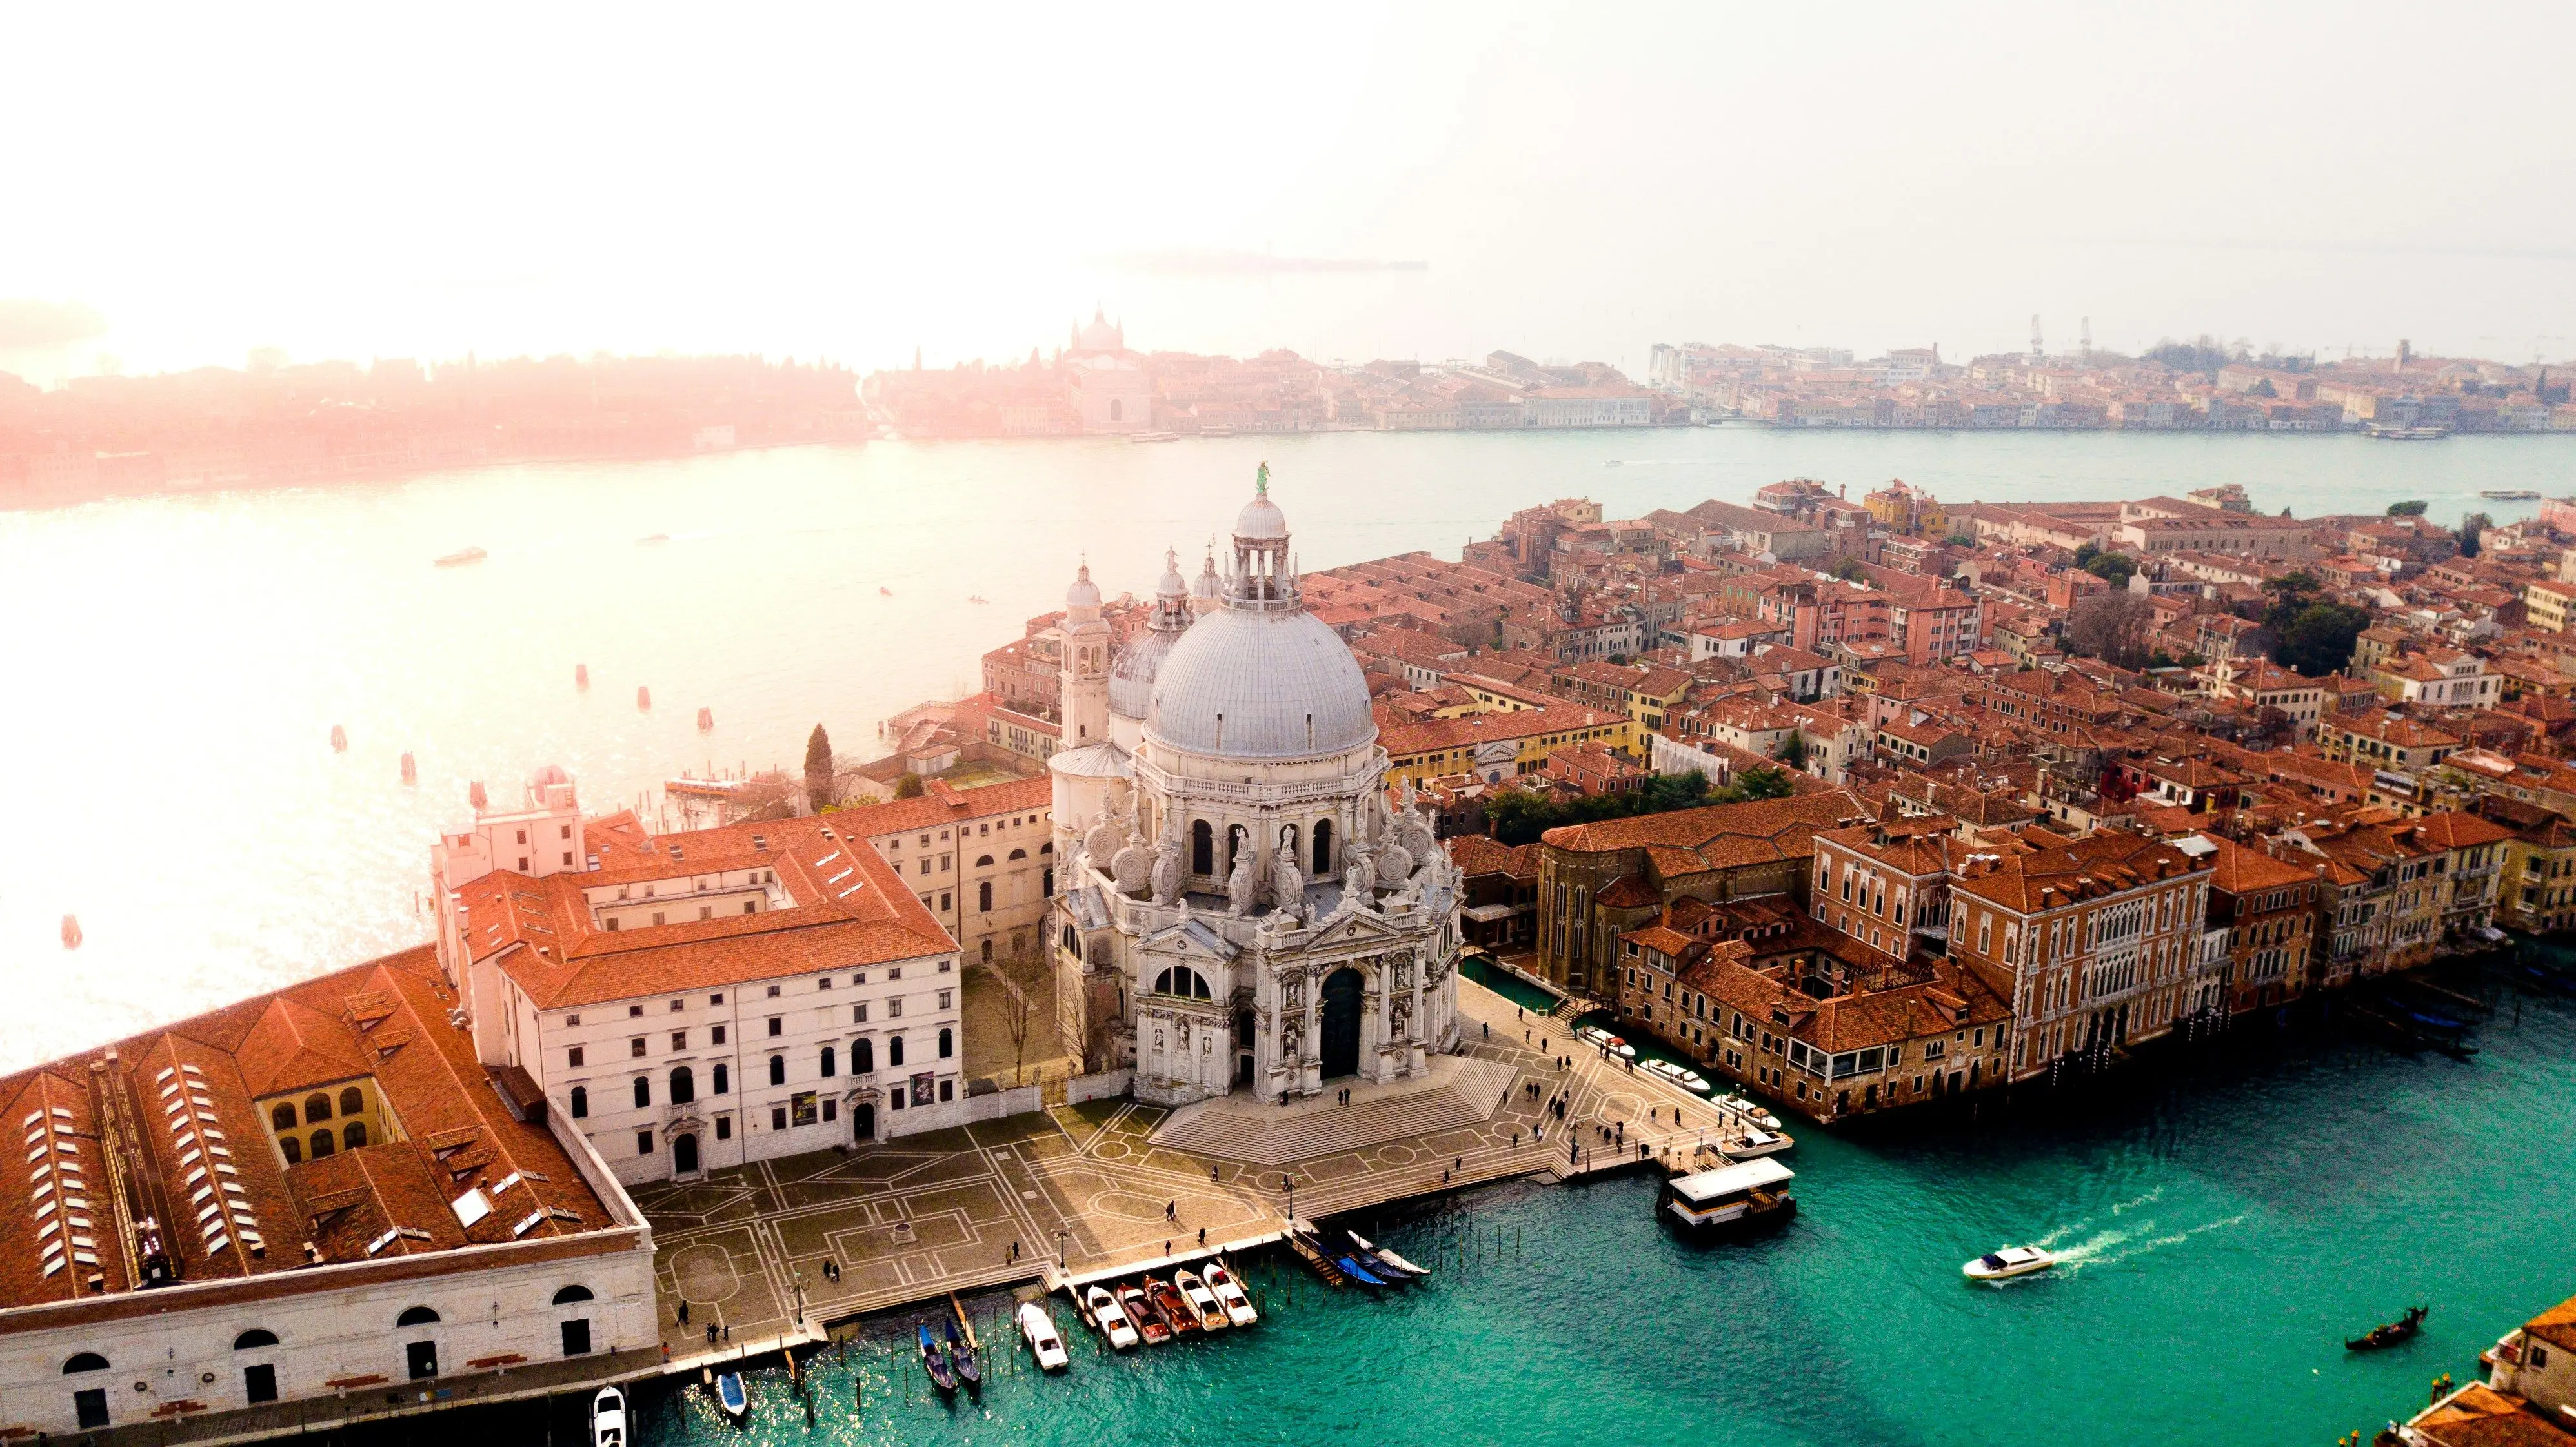 Туристи, які не сплатили, можуть отримати штраф: у центрі Венеції починають діяти нові правила.